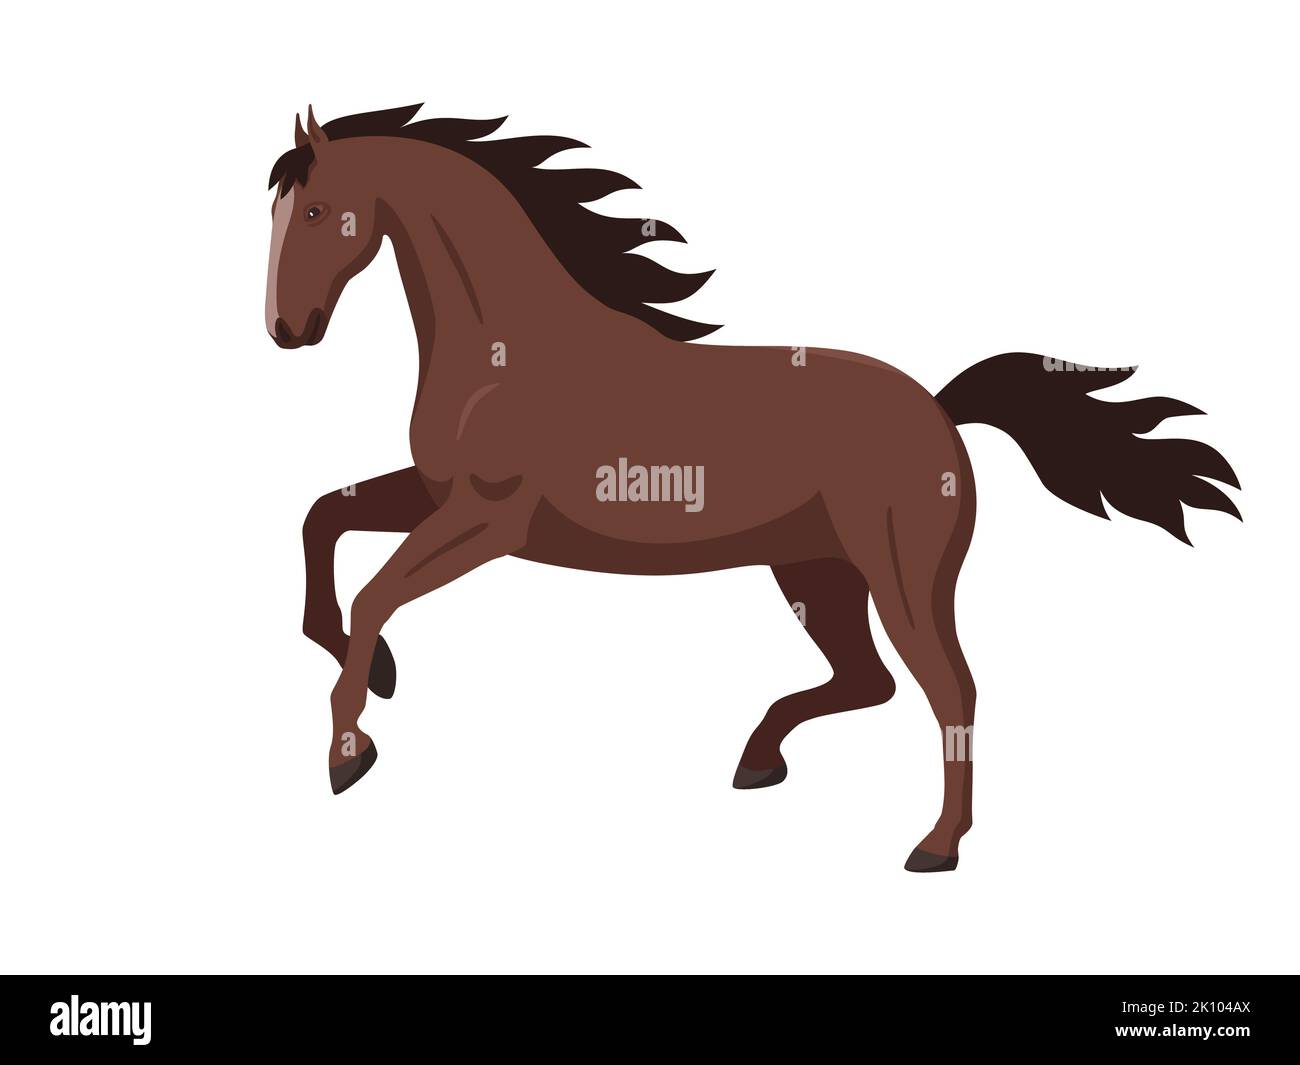 Un cheval brun de course. Illustration vectorielle d'une tige de cheval marron de course isolée sur blanc. Conception plate, vue latérale. Illustration de Vecteur